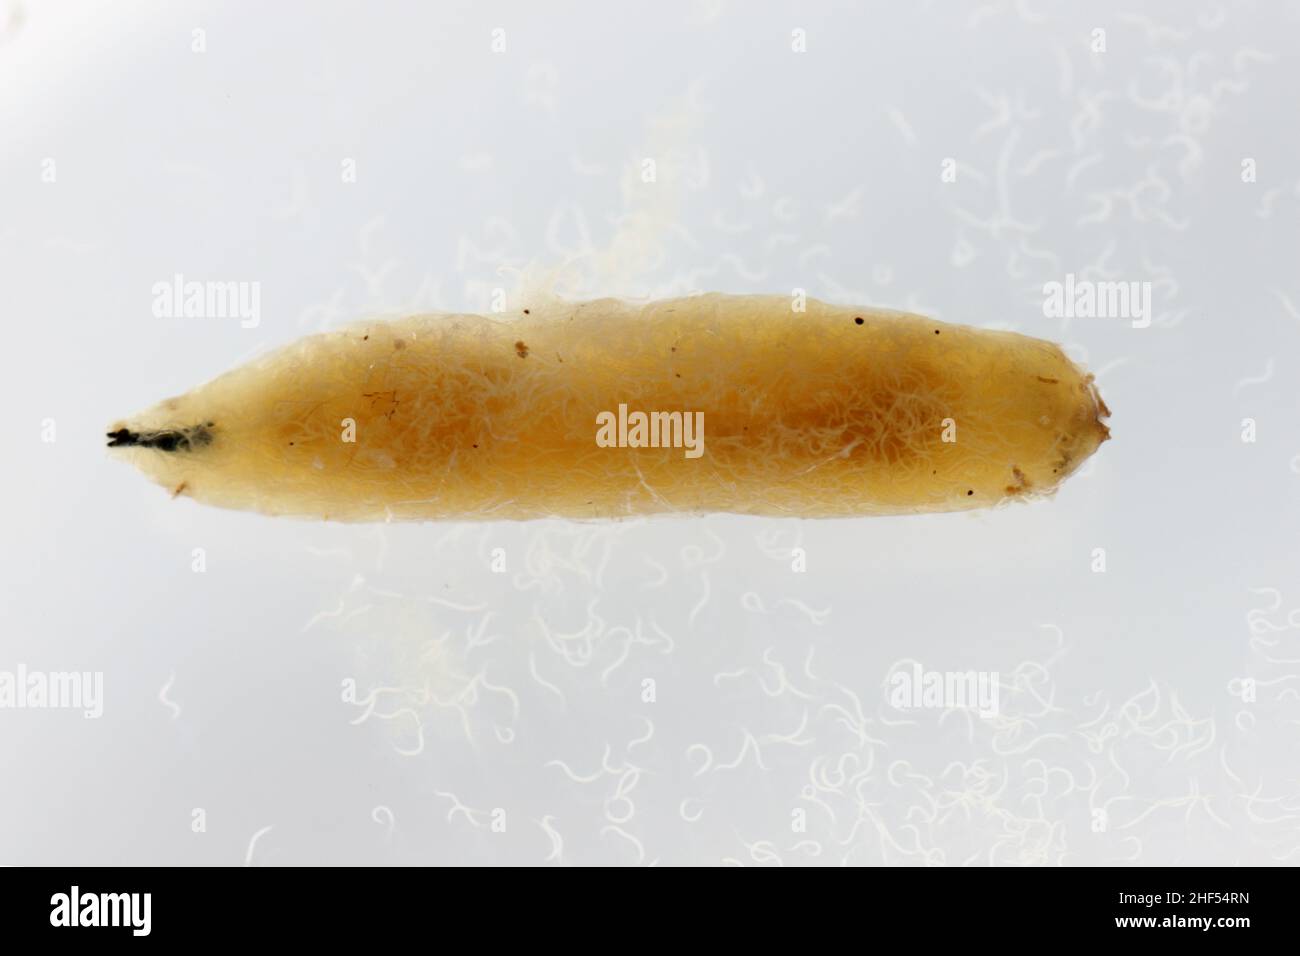 Körper von Kohllarven gefüllt mit parasitären entomopathogenen Nematoden -Steinernema sp. Auch die Nematoden schwammen ins Wasser. Stockfoto